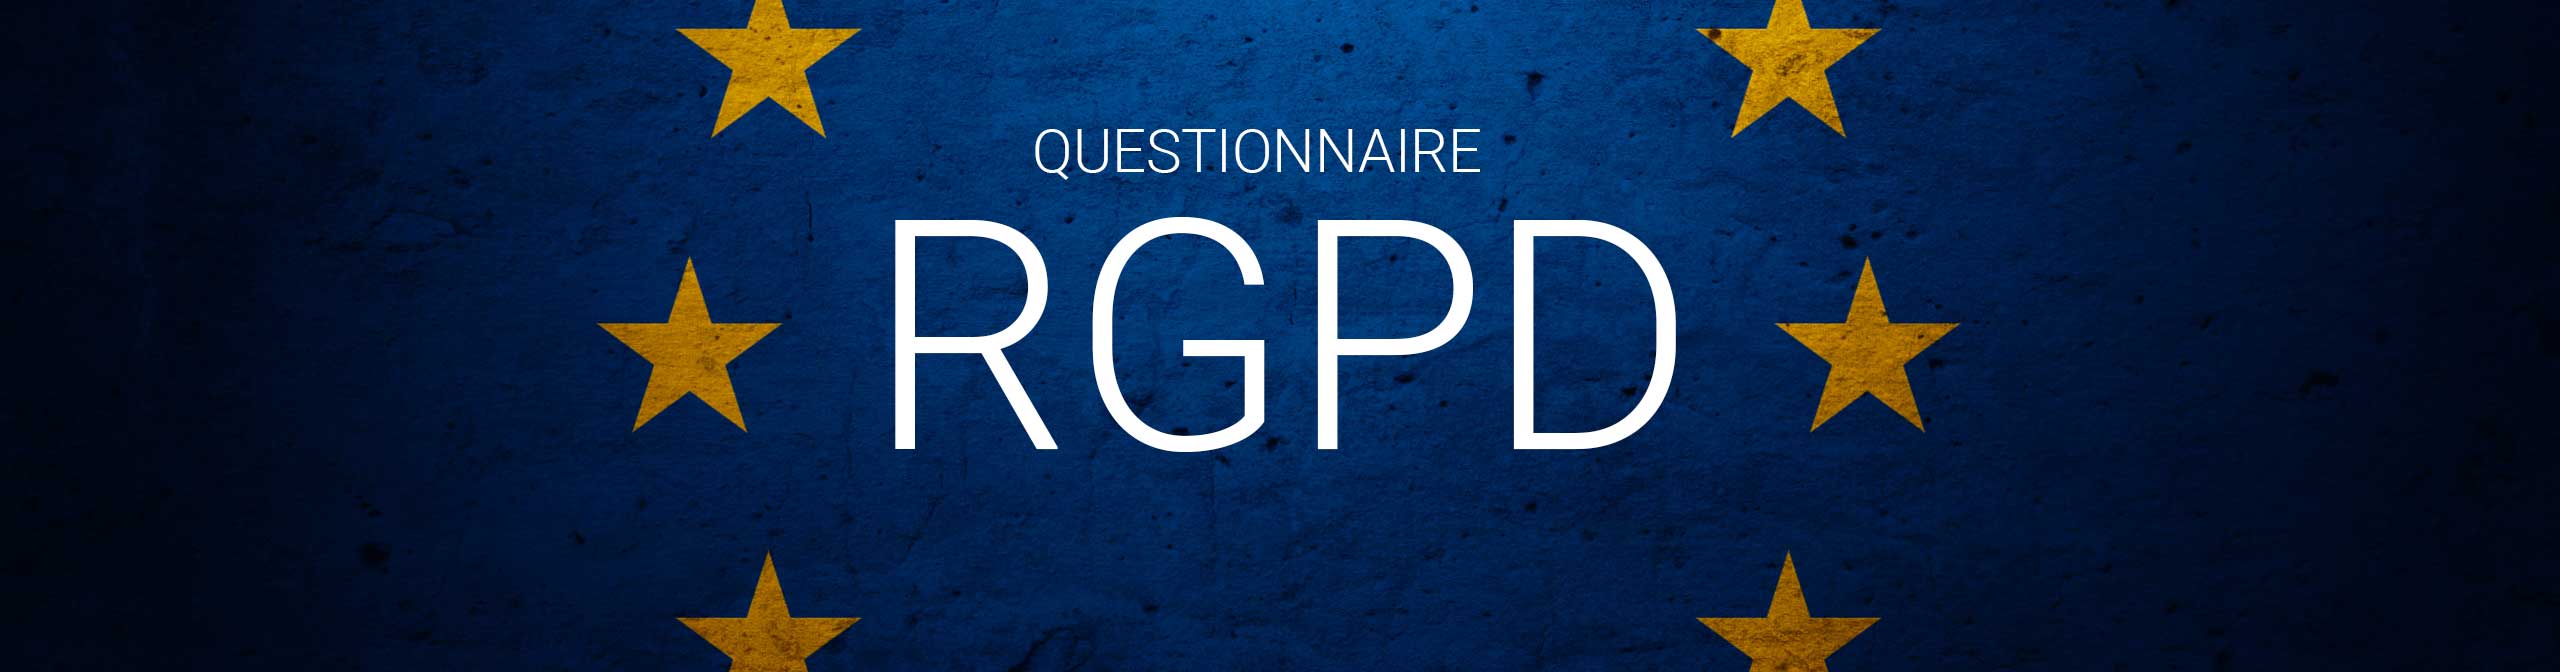 77 questions et réponses sur le domaine RH et le RGPD